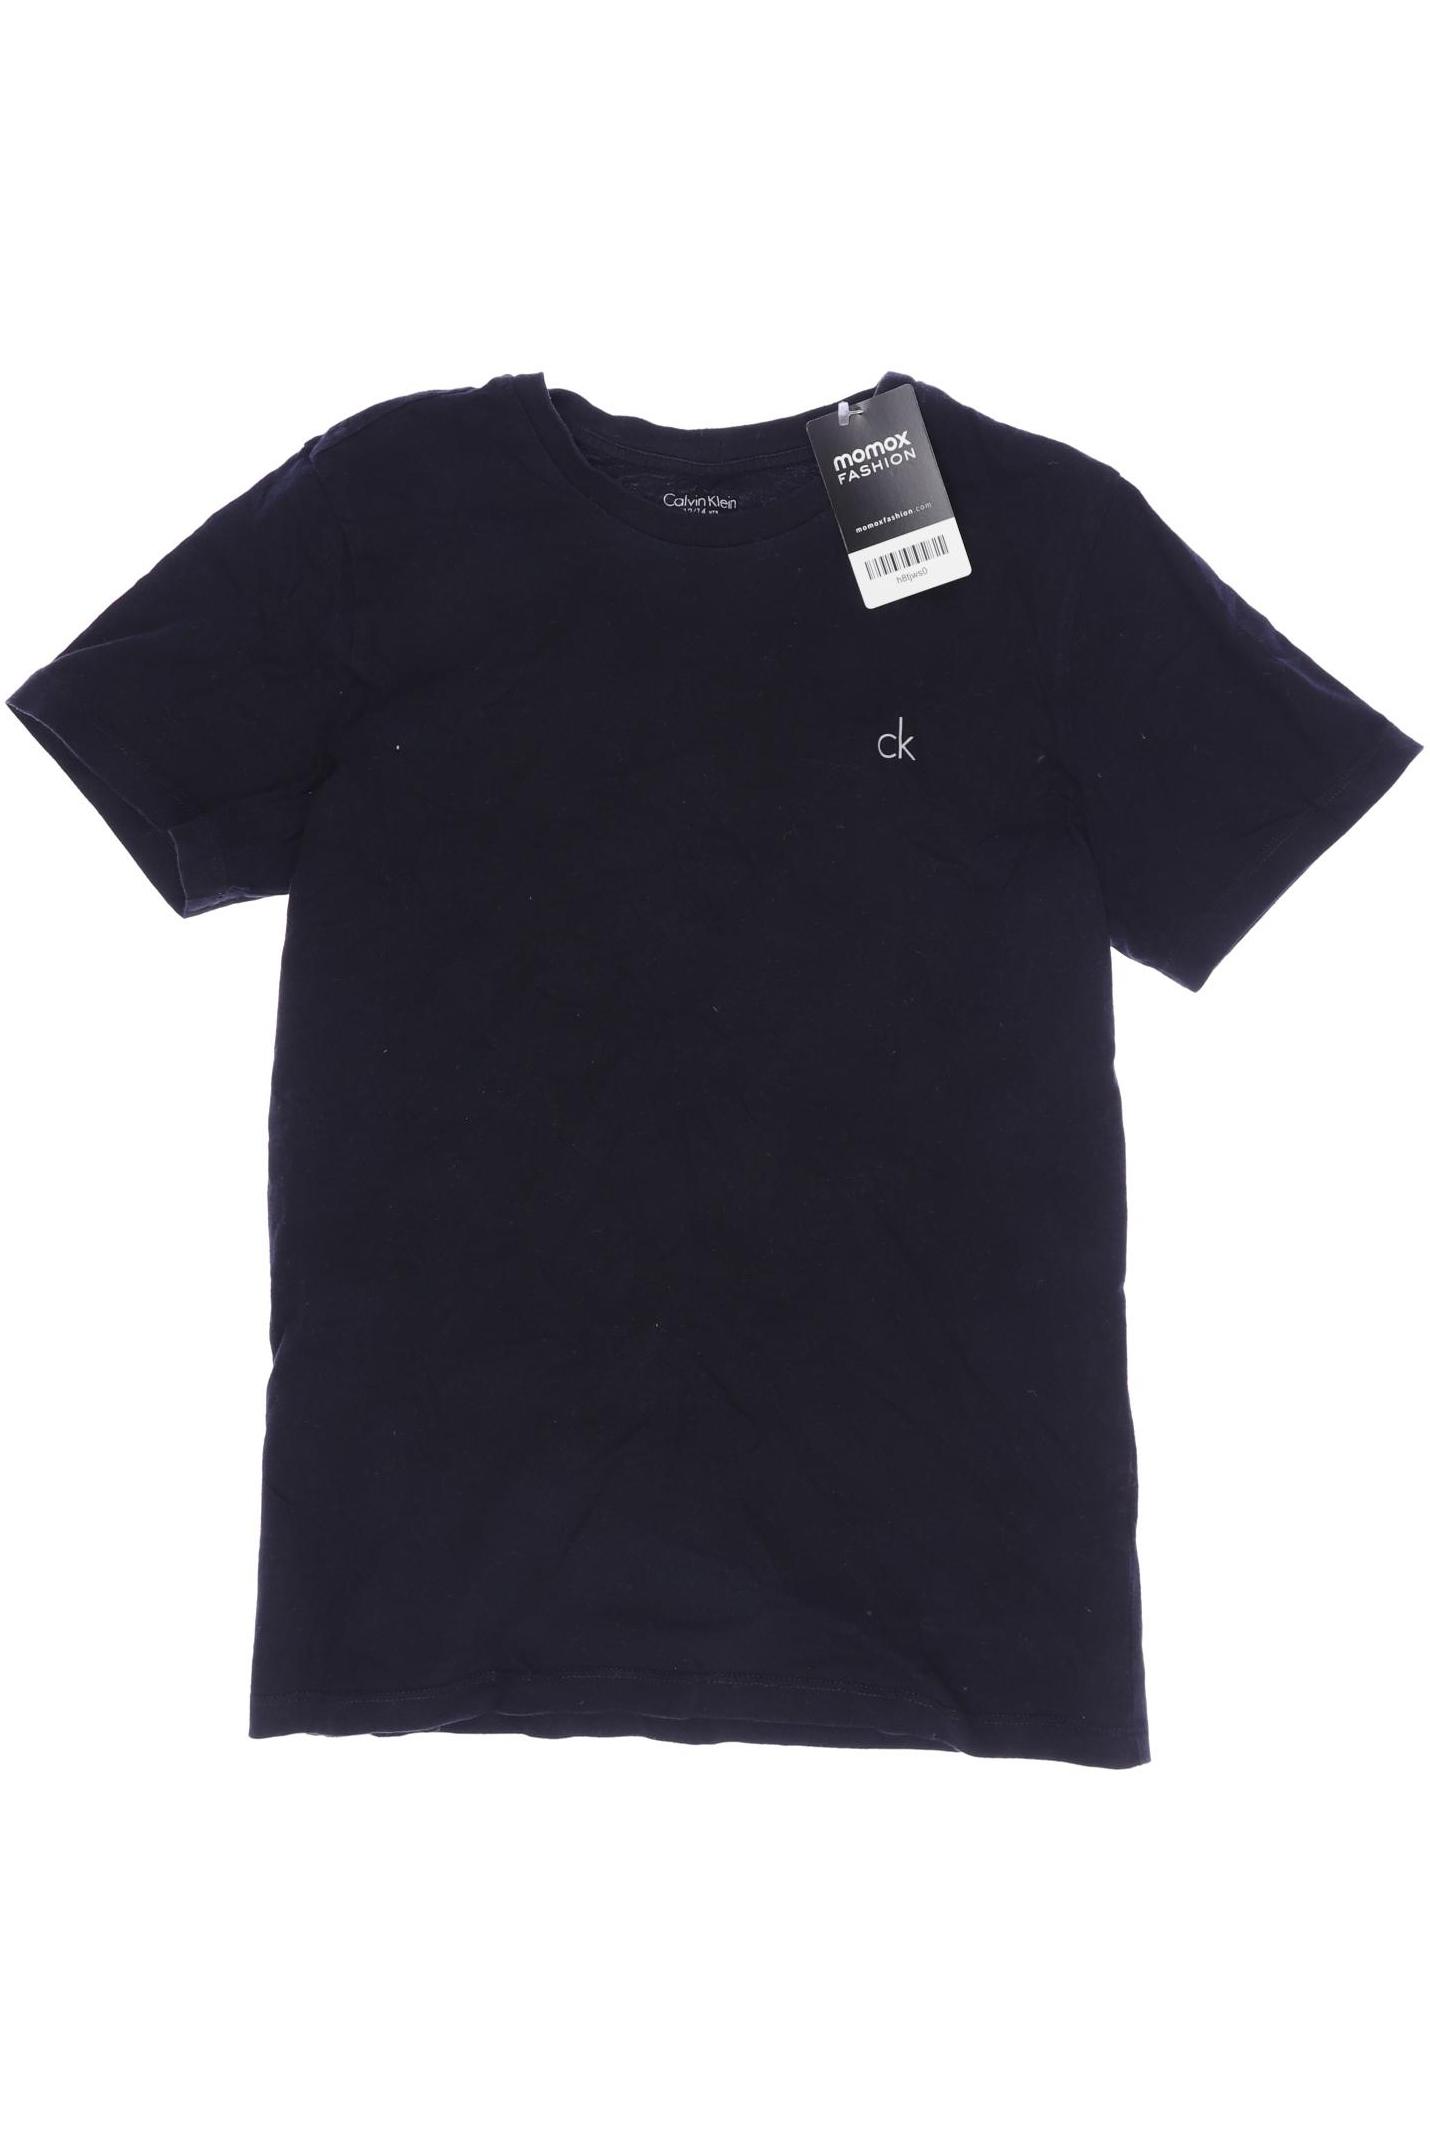 Calvin Klein Jungen T-Shirt, marineblau von Calvin Klein